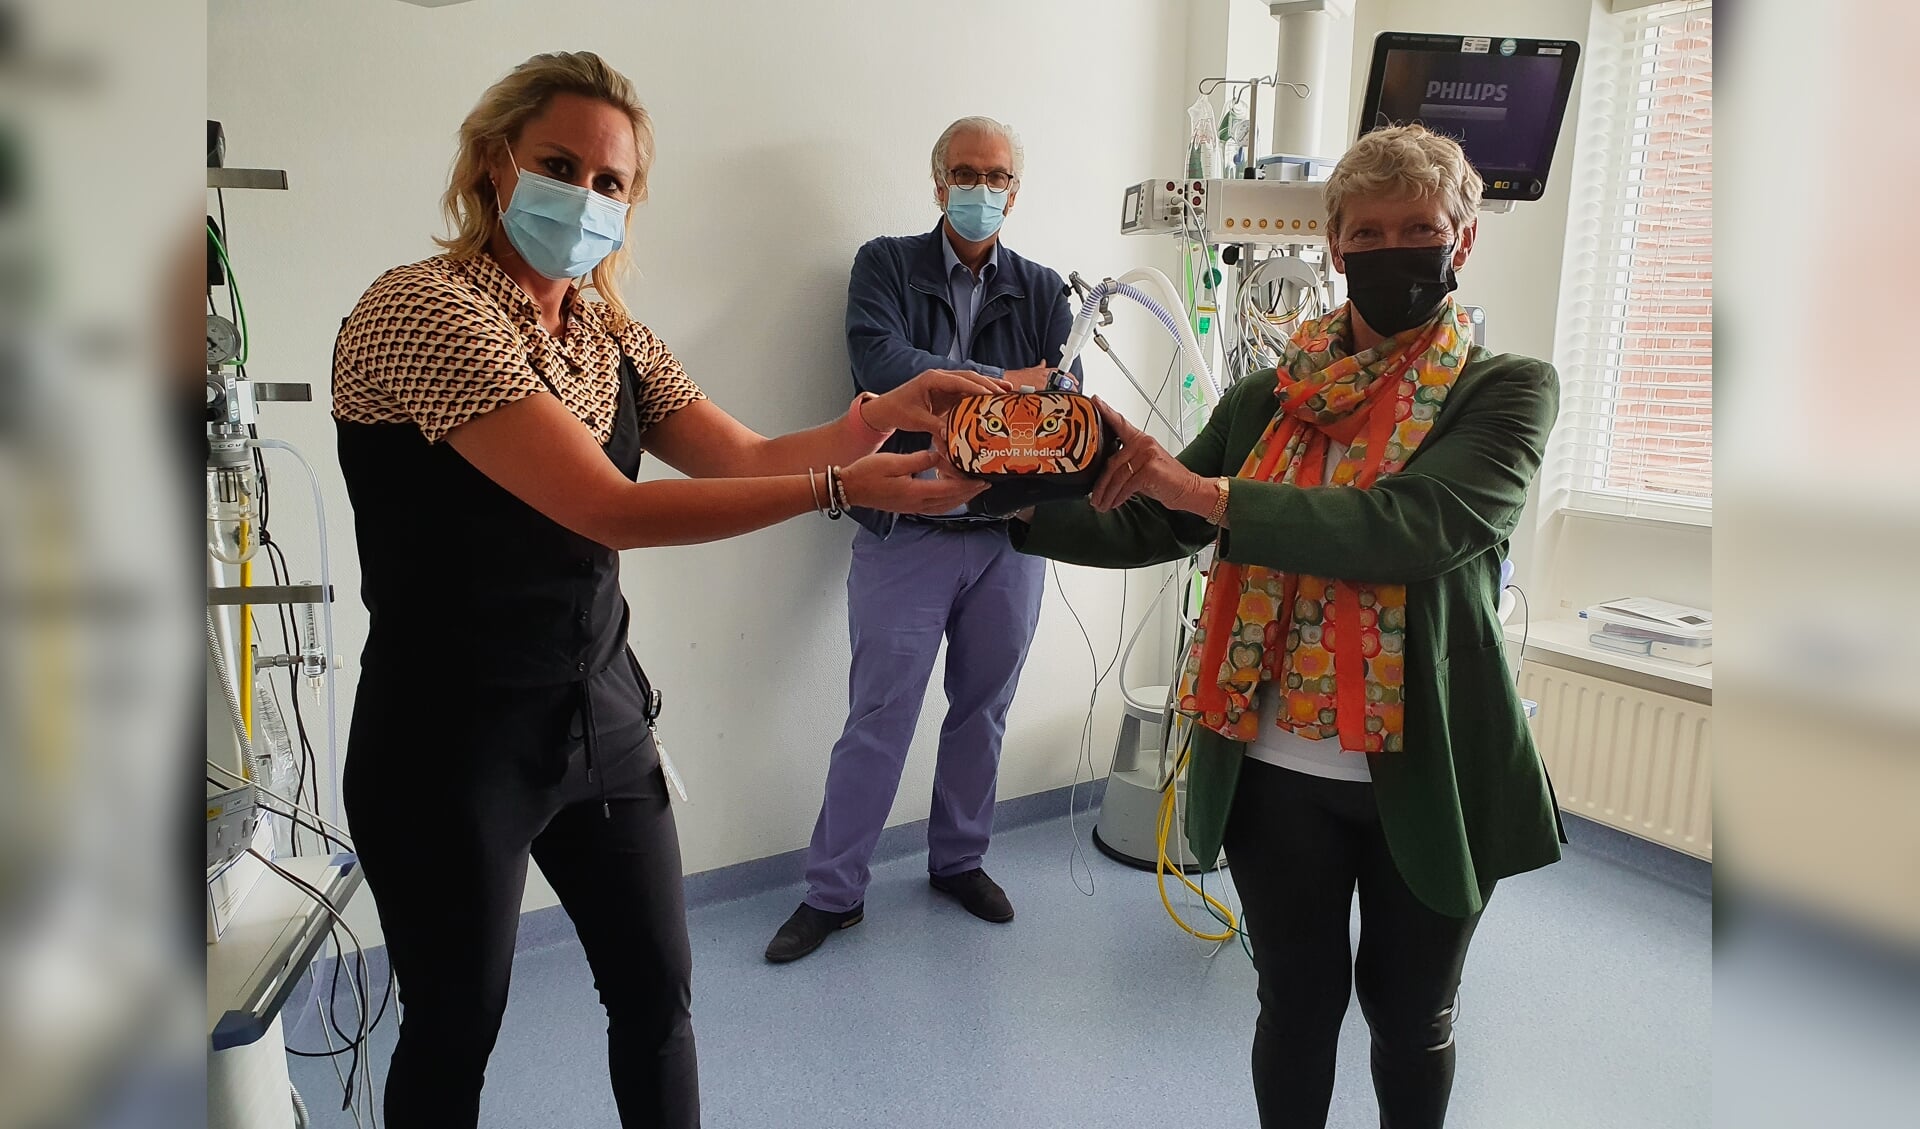 Afdelingshoofd Marieke van Splunter (links) ontvangt één van de brillen van Arna de Wit, penningmeester van de stichting.